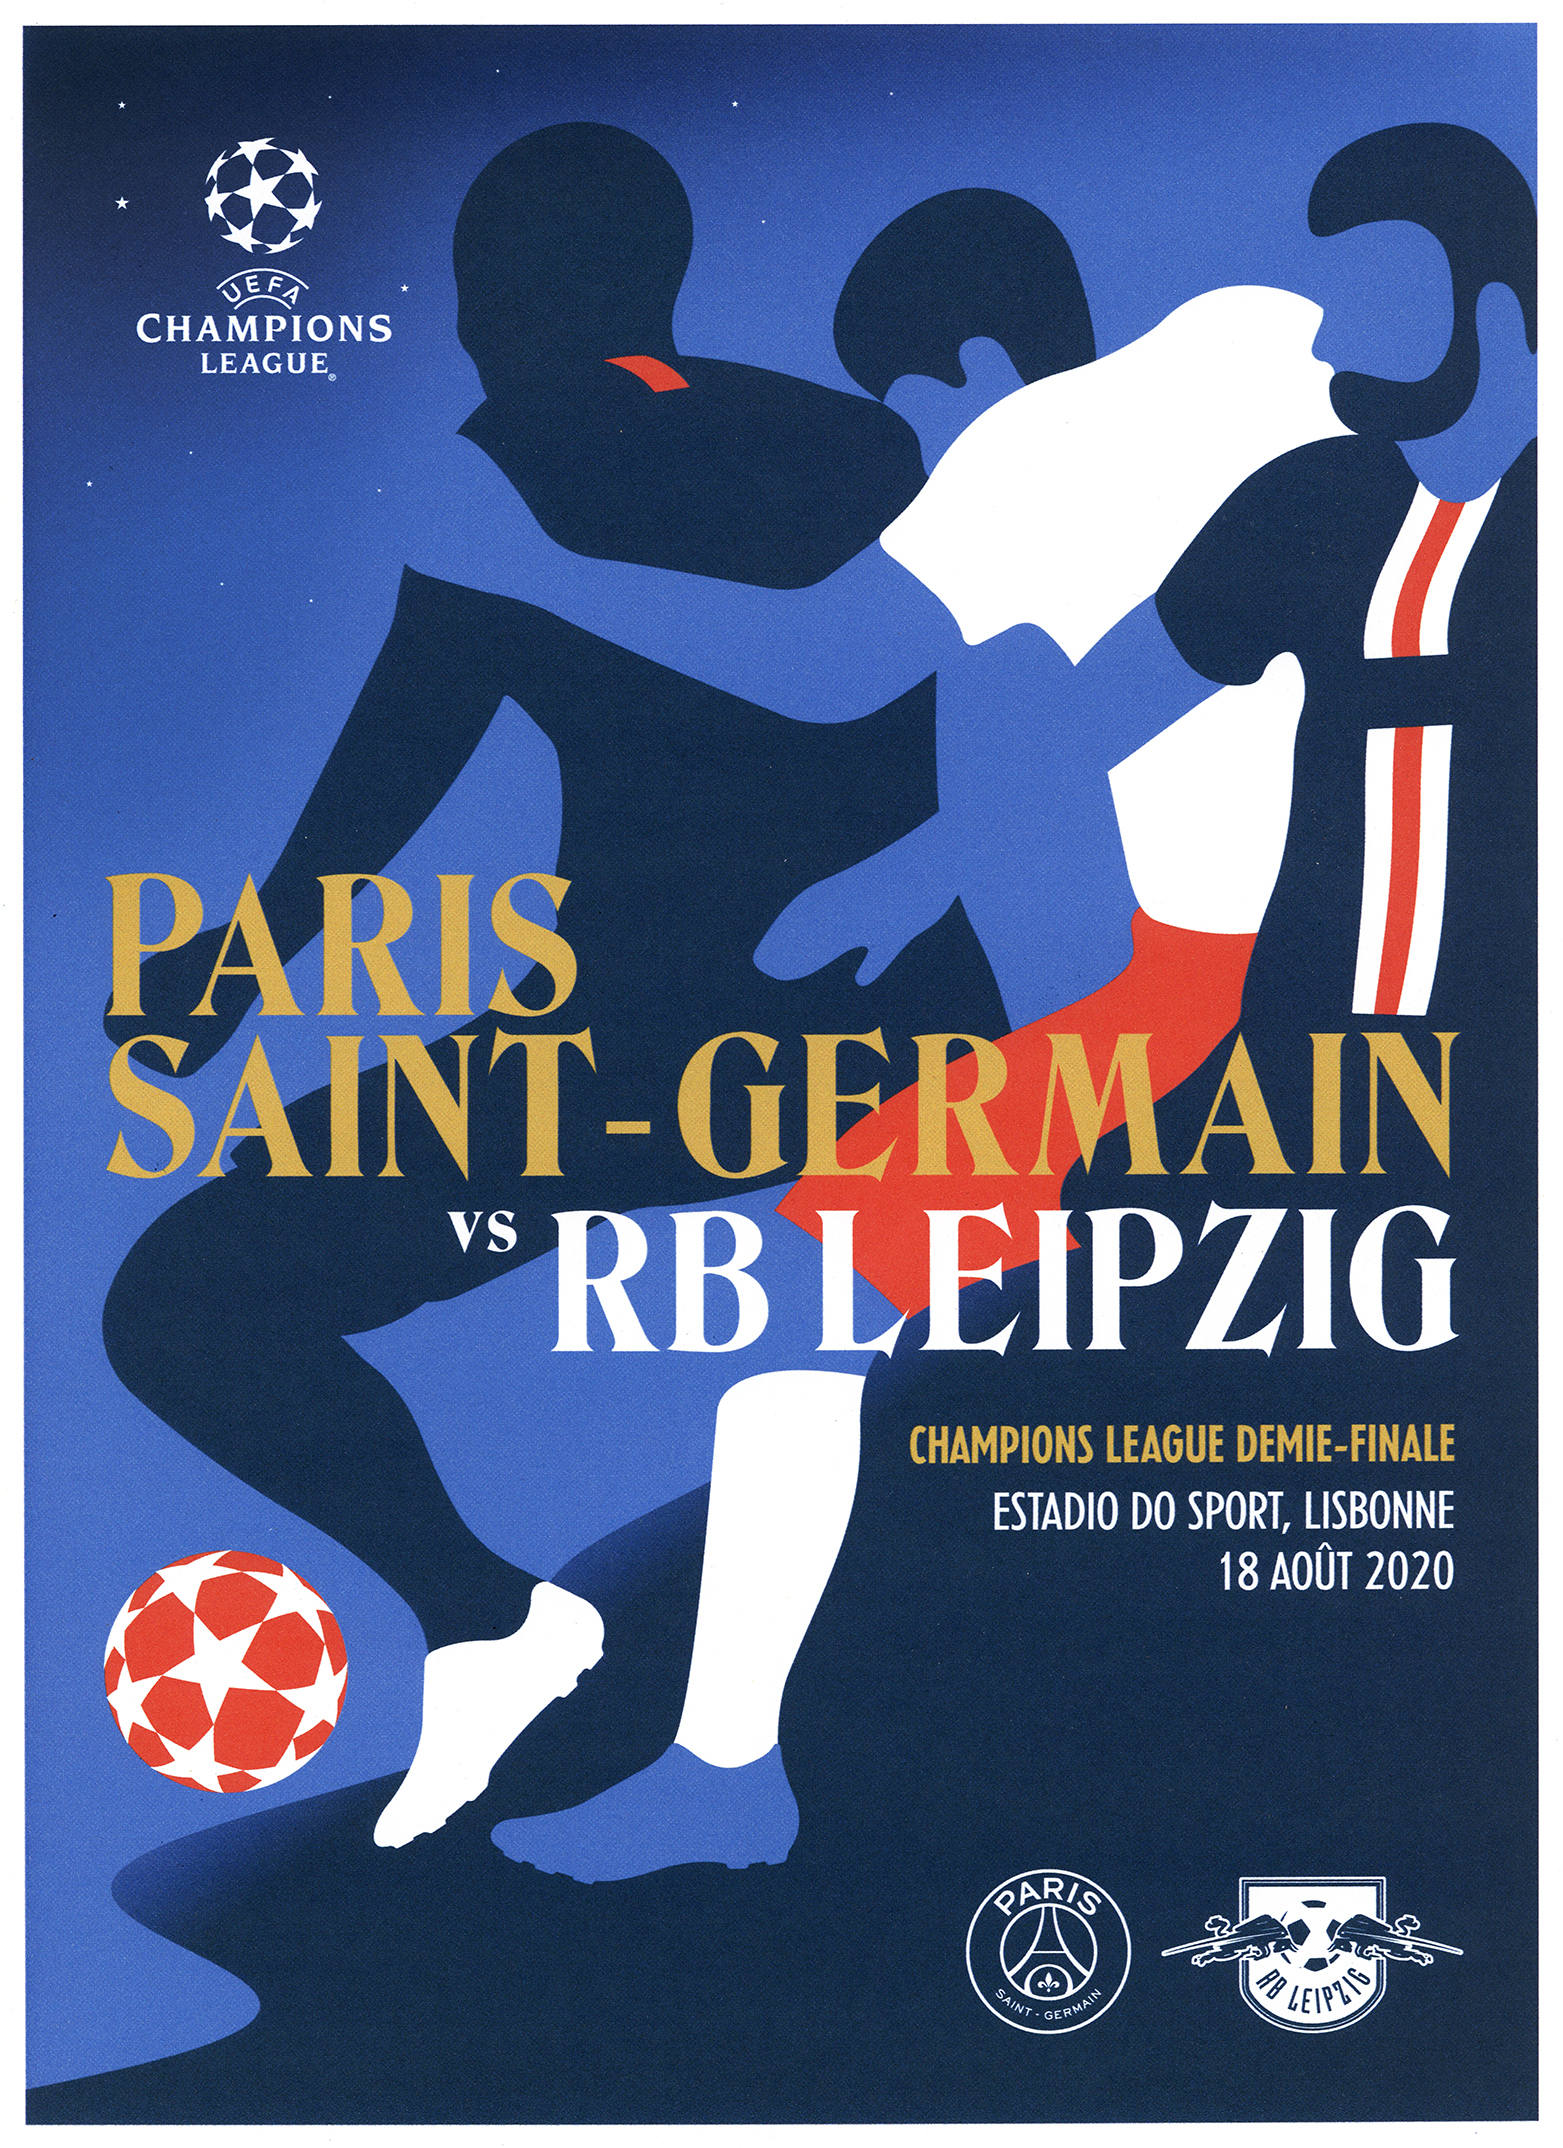 PSG – Champions League Demi-Finale Official Posters